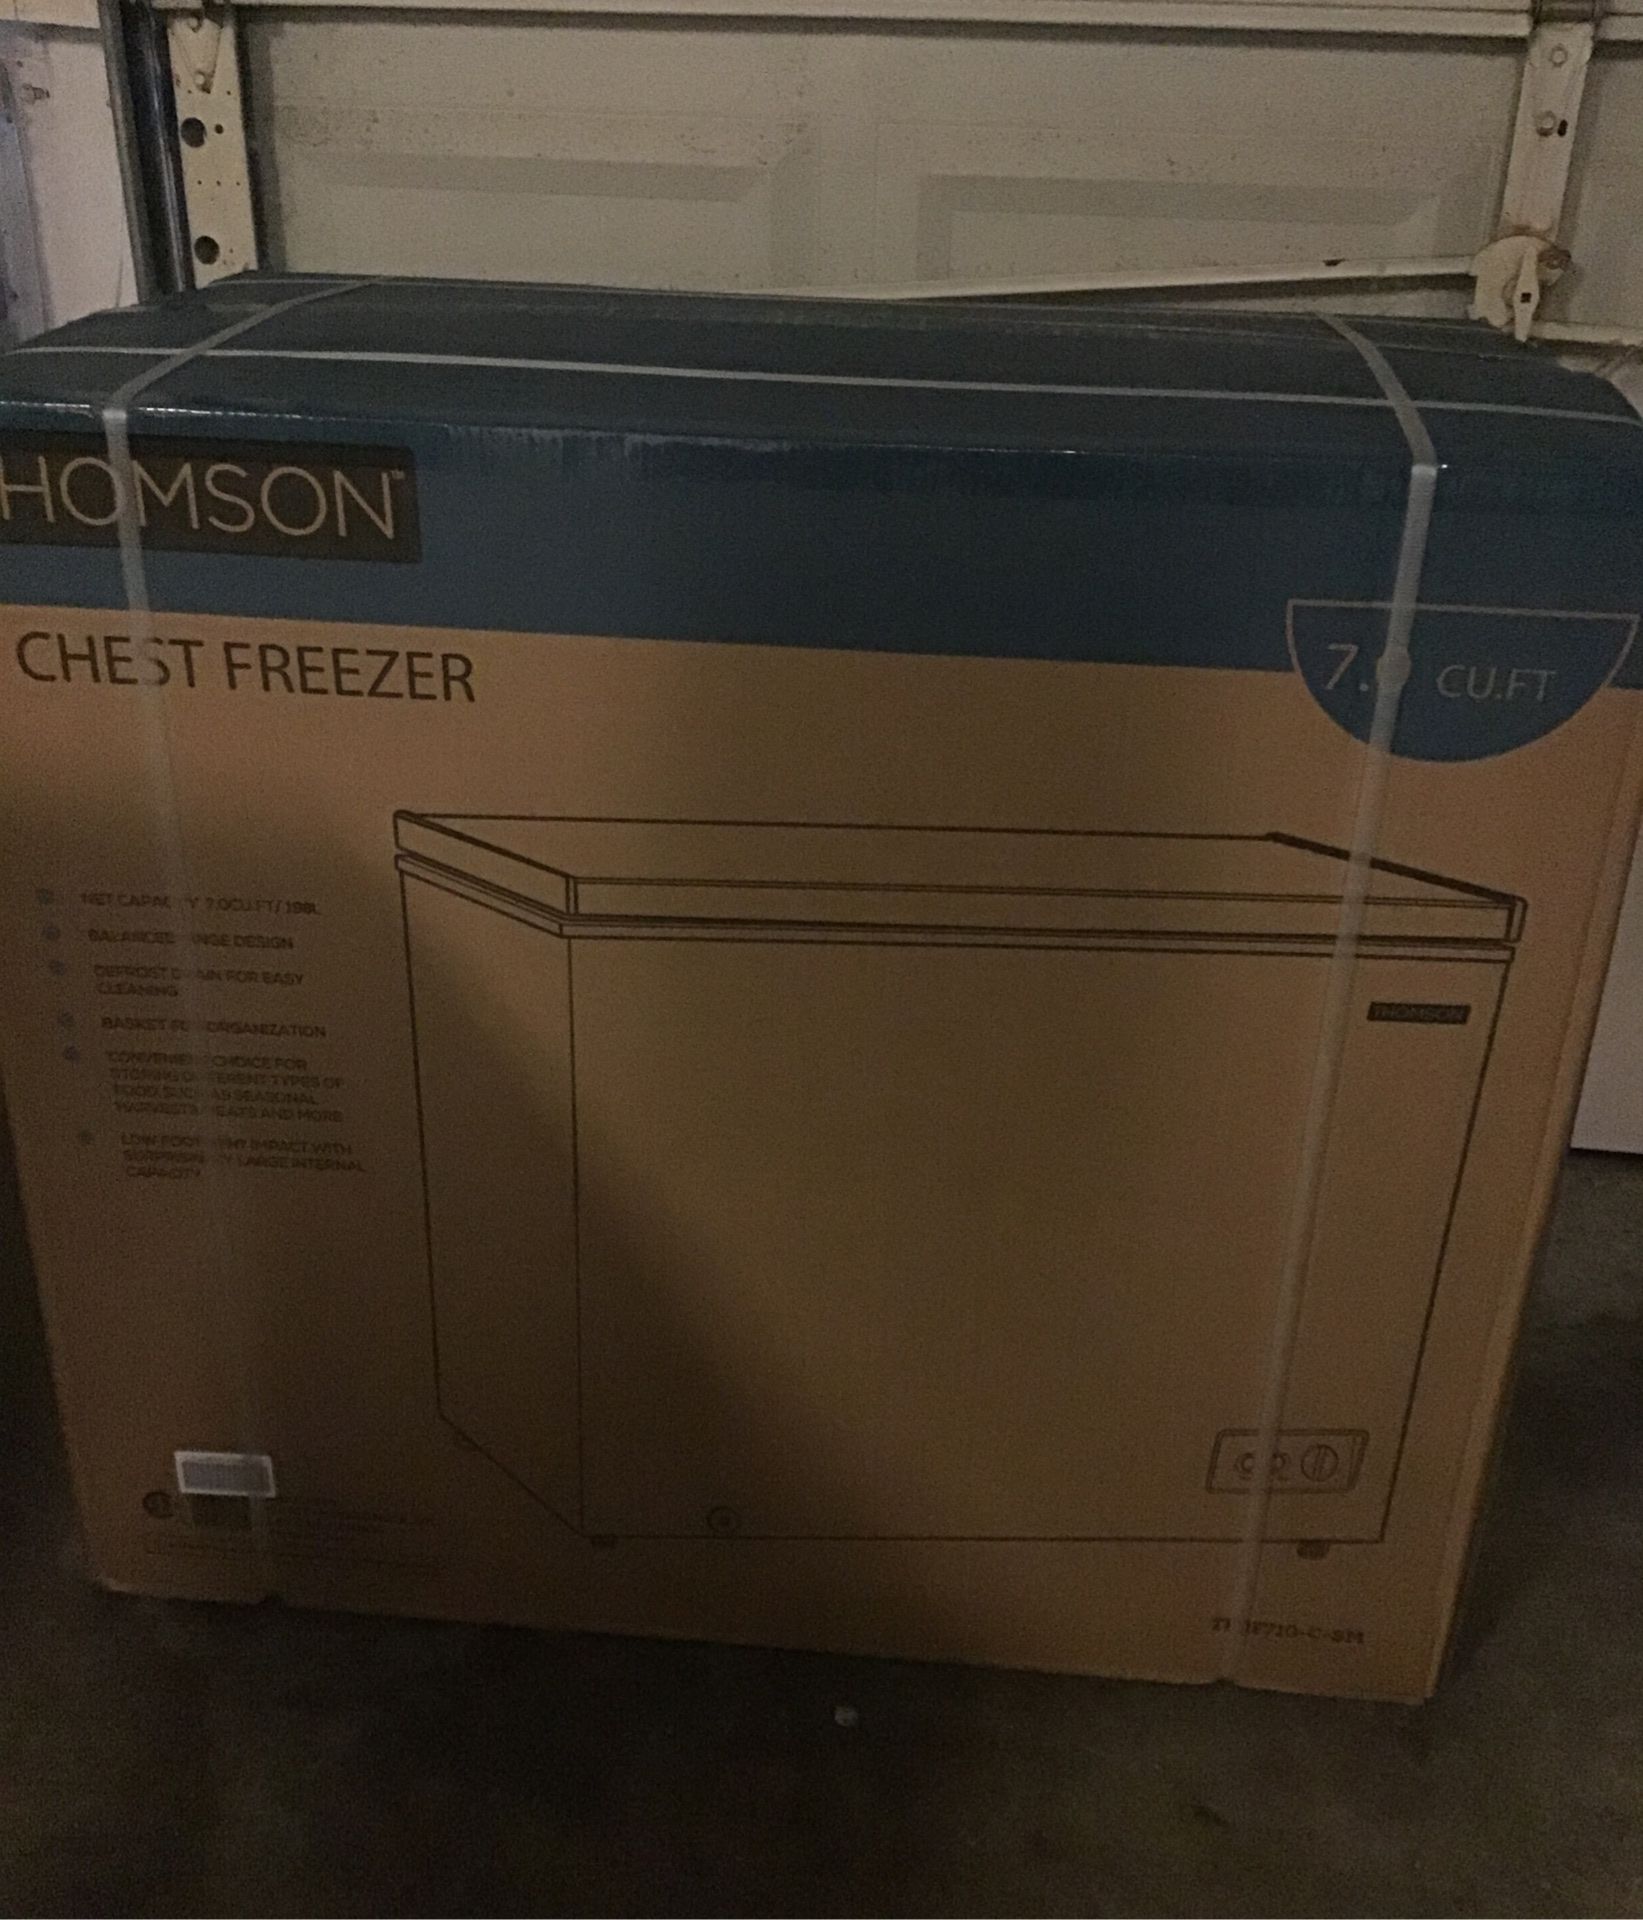 New chest freezer